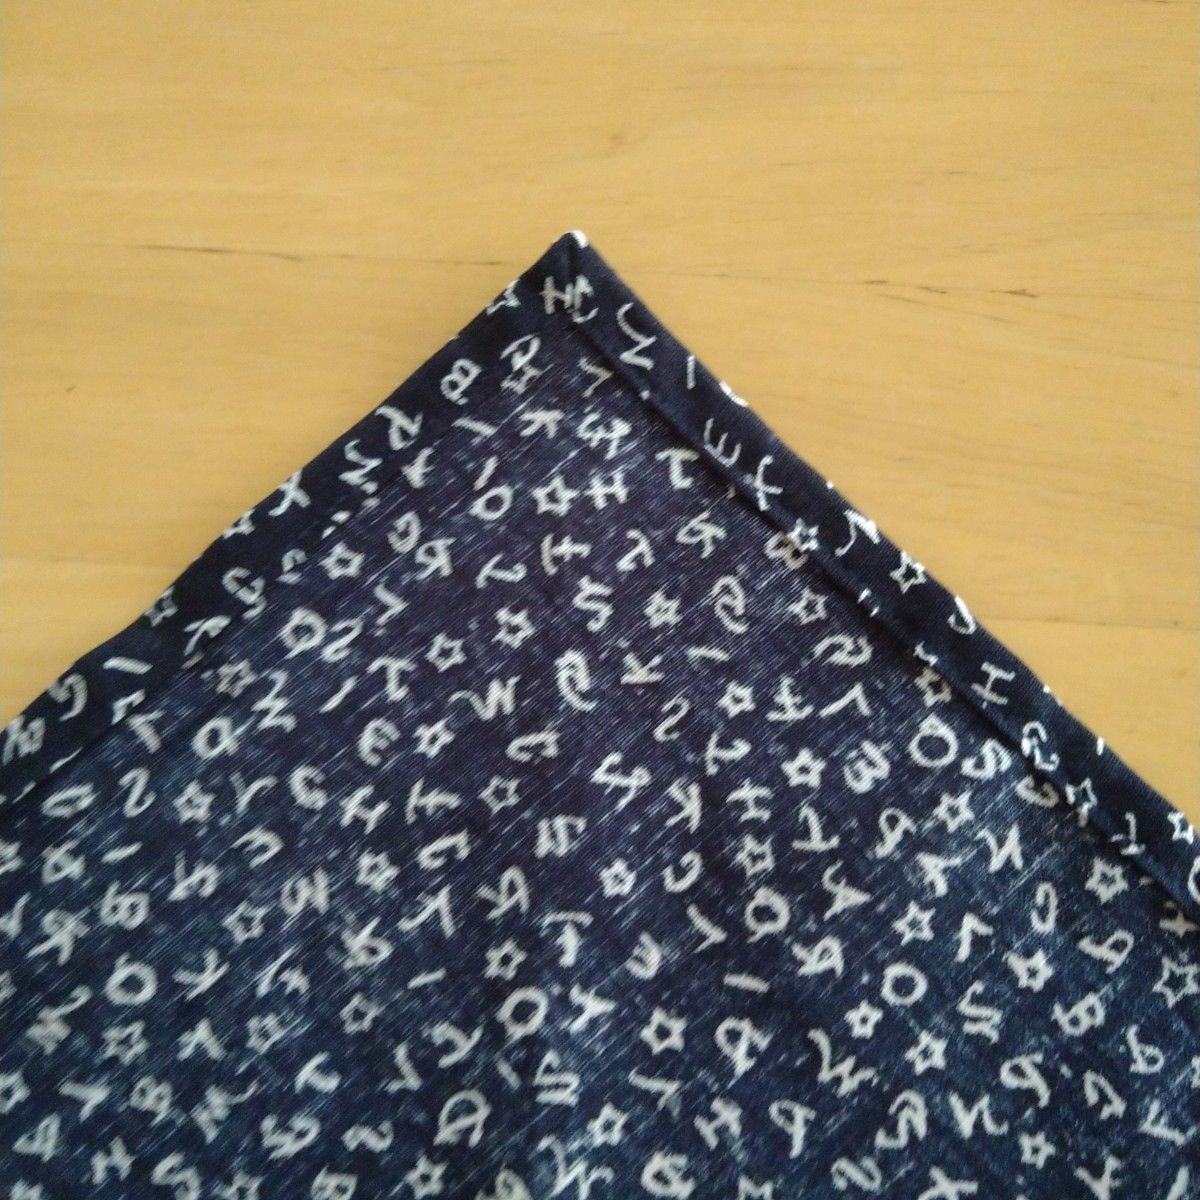 ハンドメイド子供用三角巾小さめサイズ